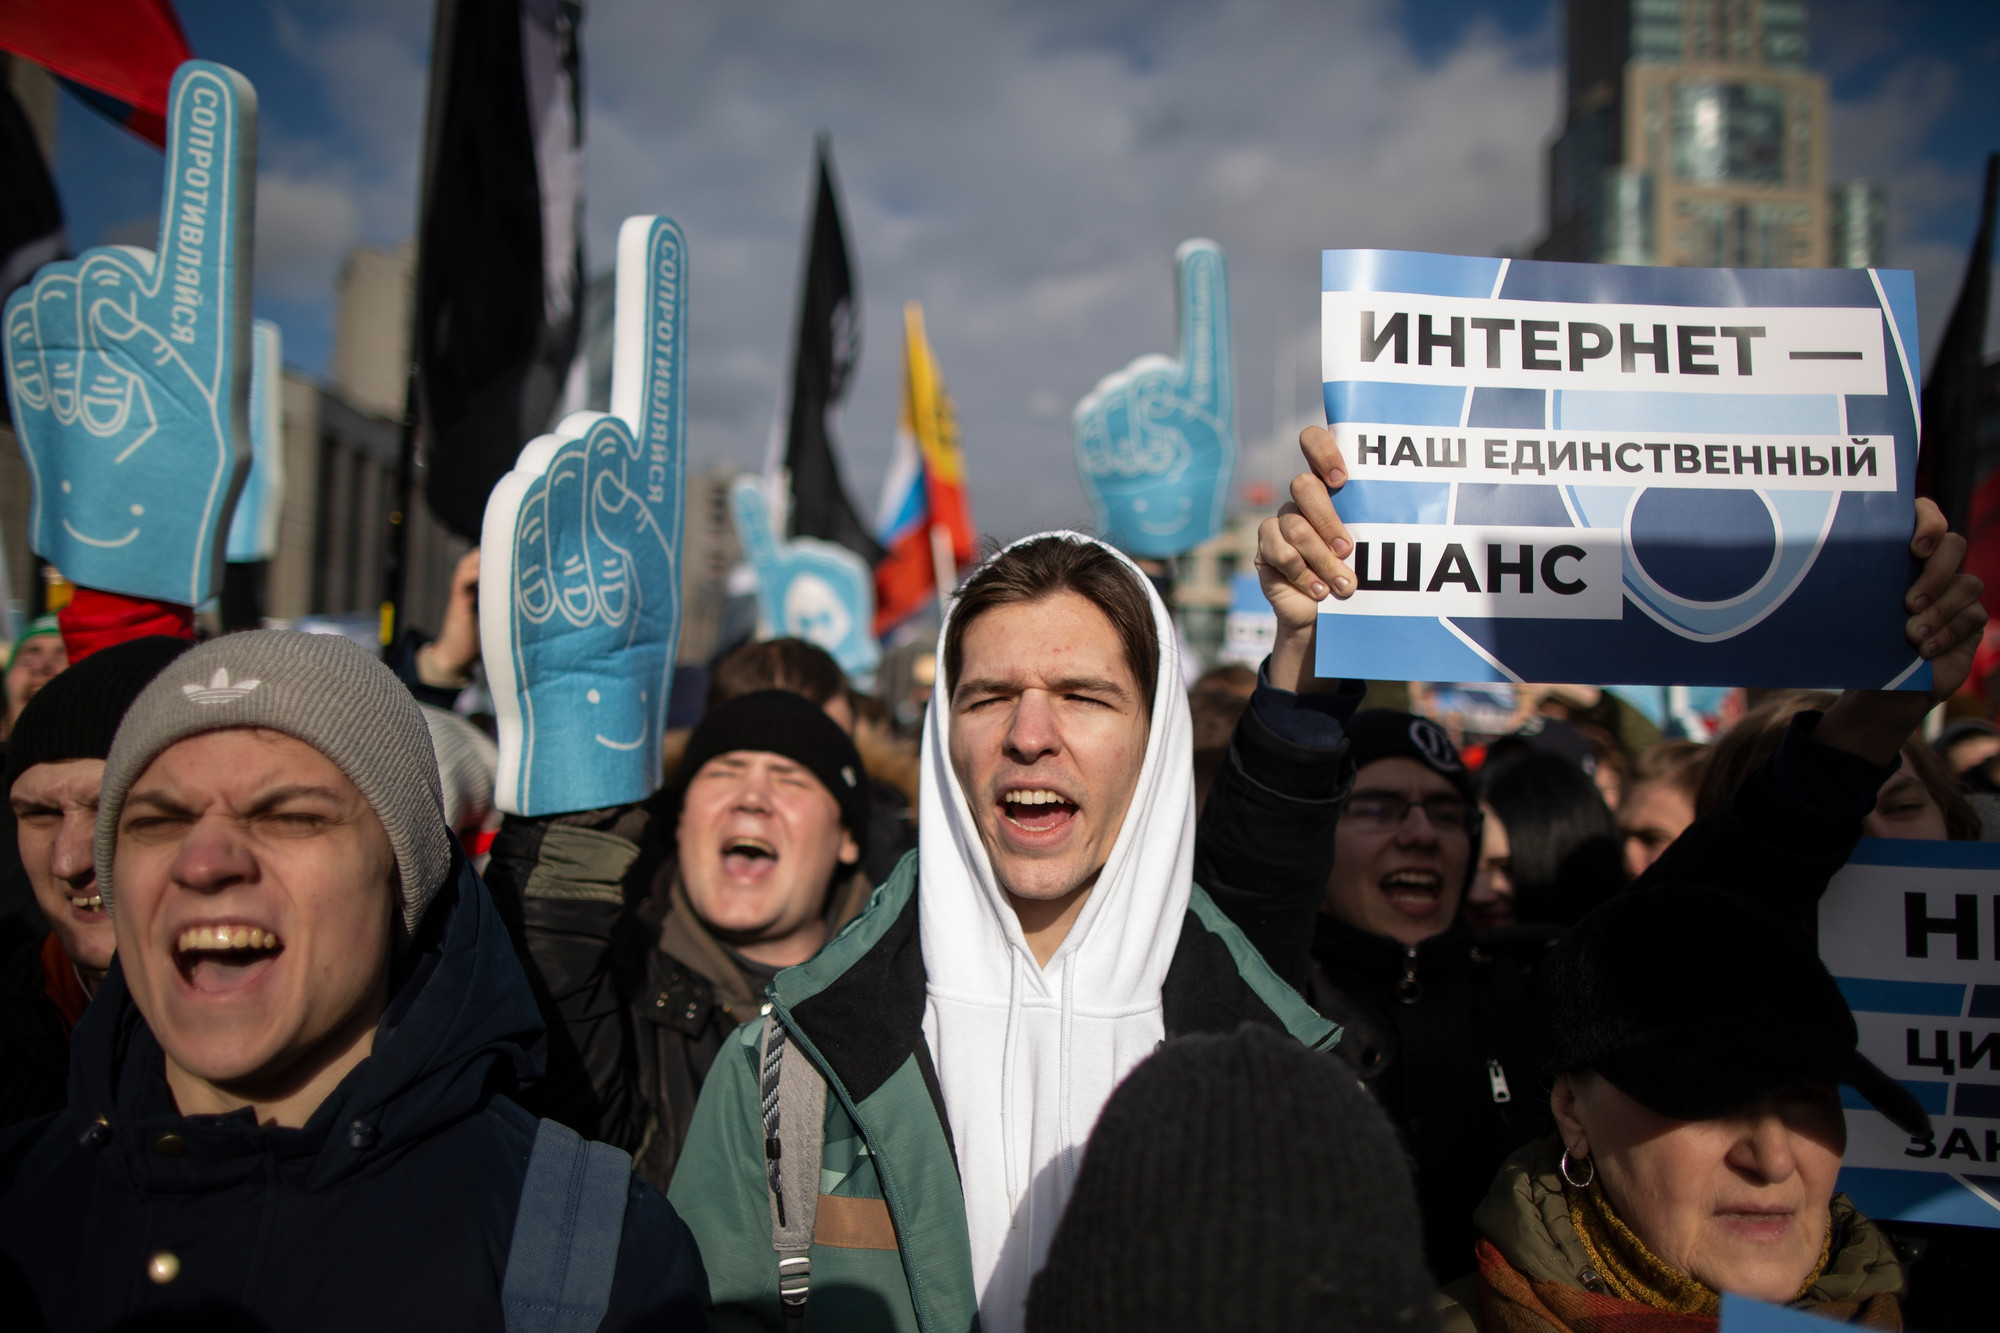 Moskva demonstrasjon